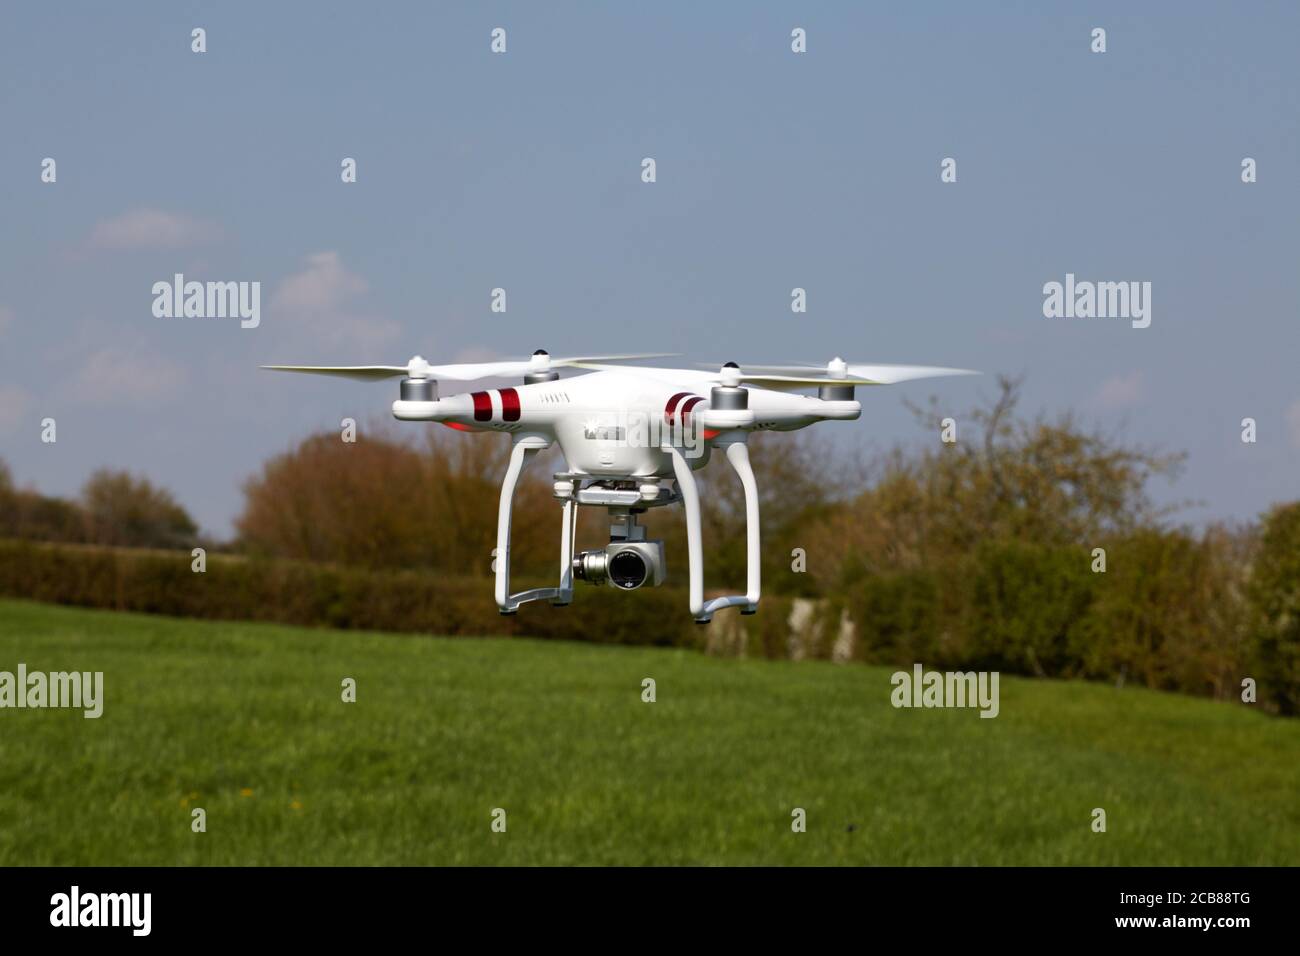 DJI Phantom 3 Standard Drone Professionnel Aerial UAV Quadrirotor